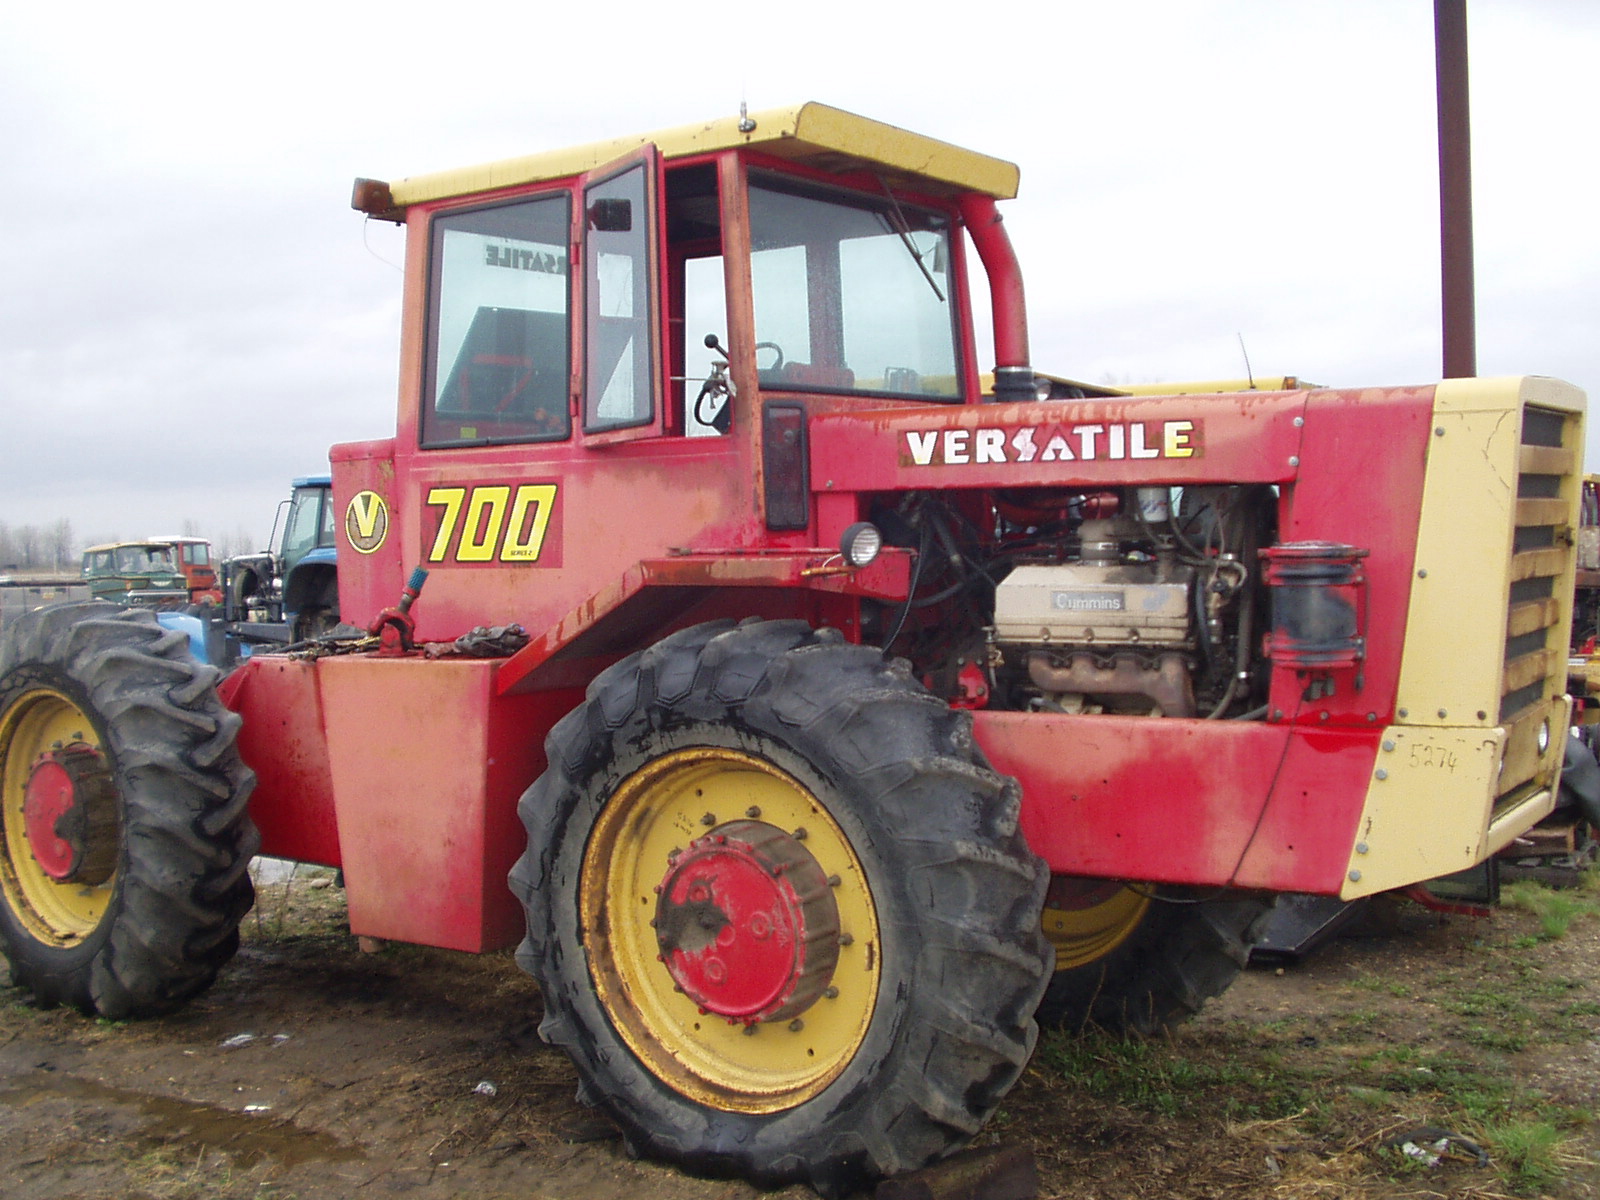 700 Versatile Tractors